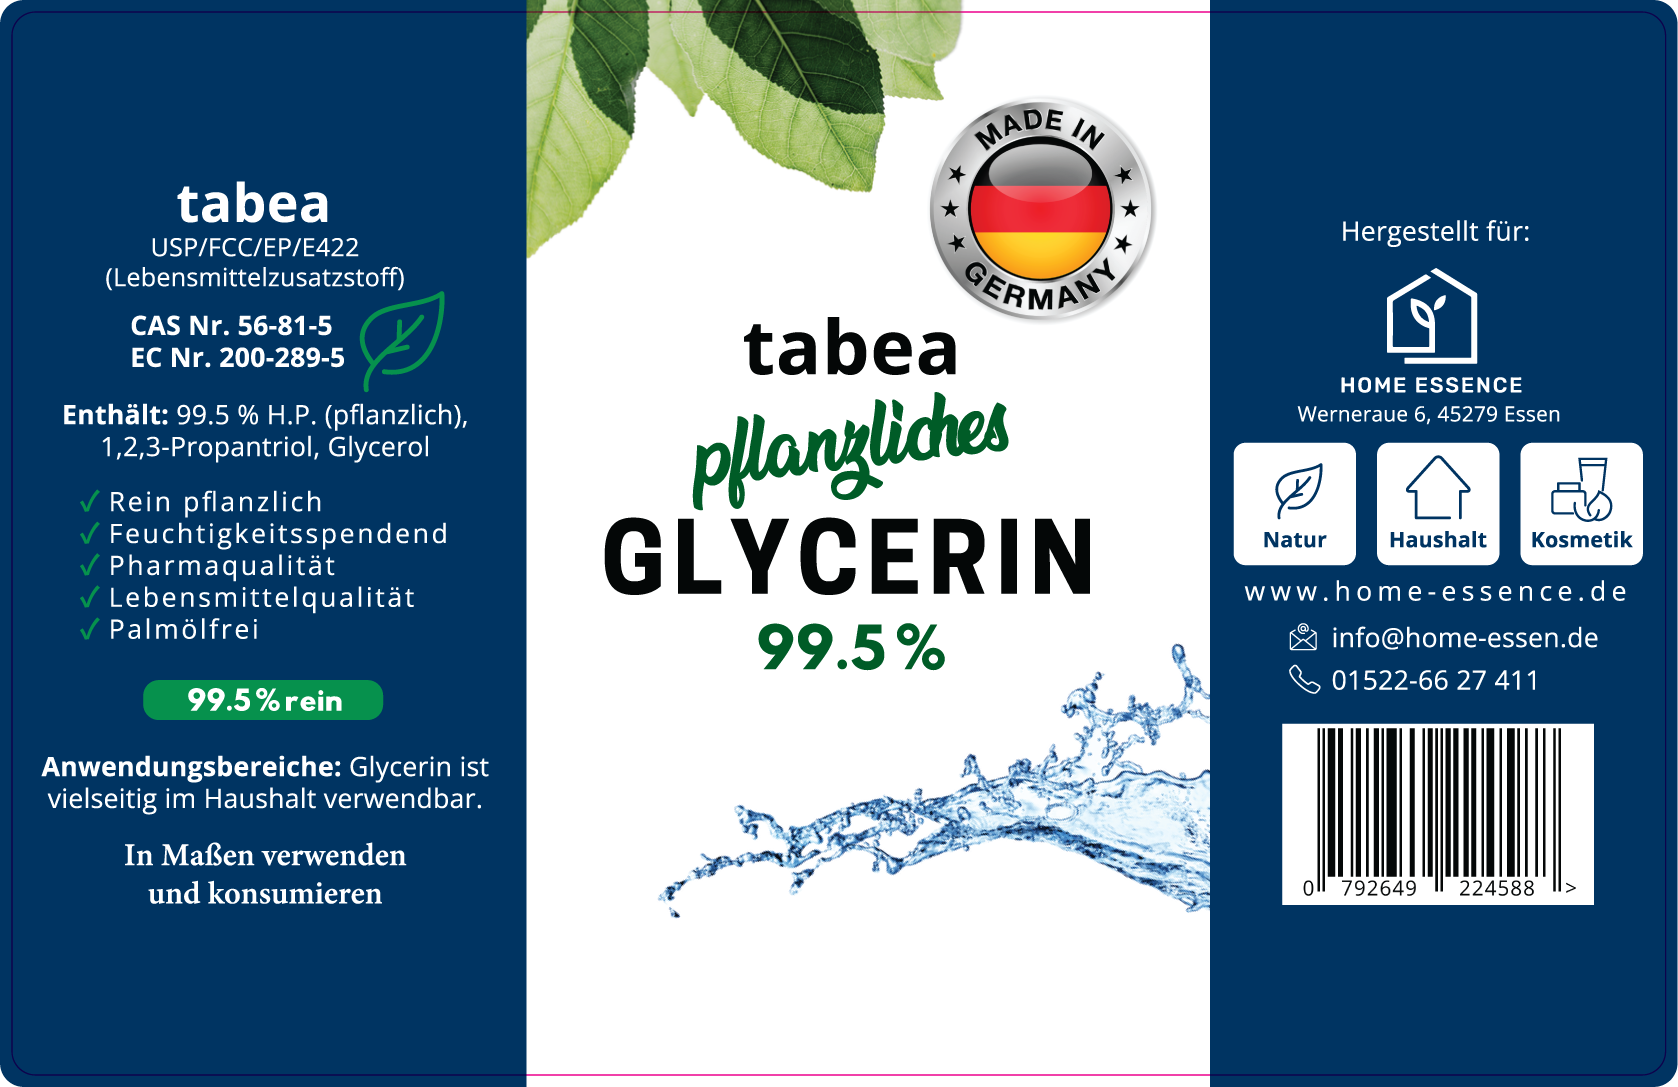 10 Liter Glycerin, Pharmaqualität, vegan, palmölfrei, Lebensmittelqualität (E422), tabea, Ph. Eur, Glycerol